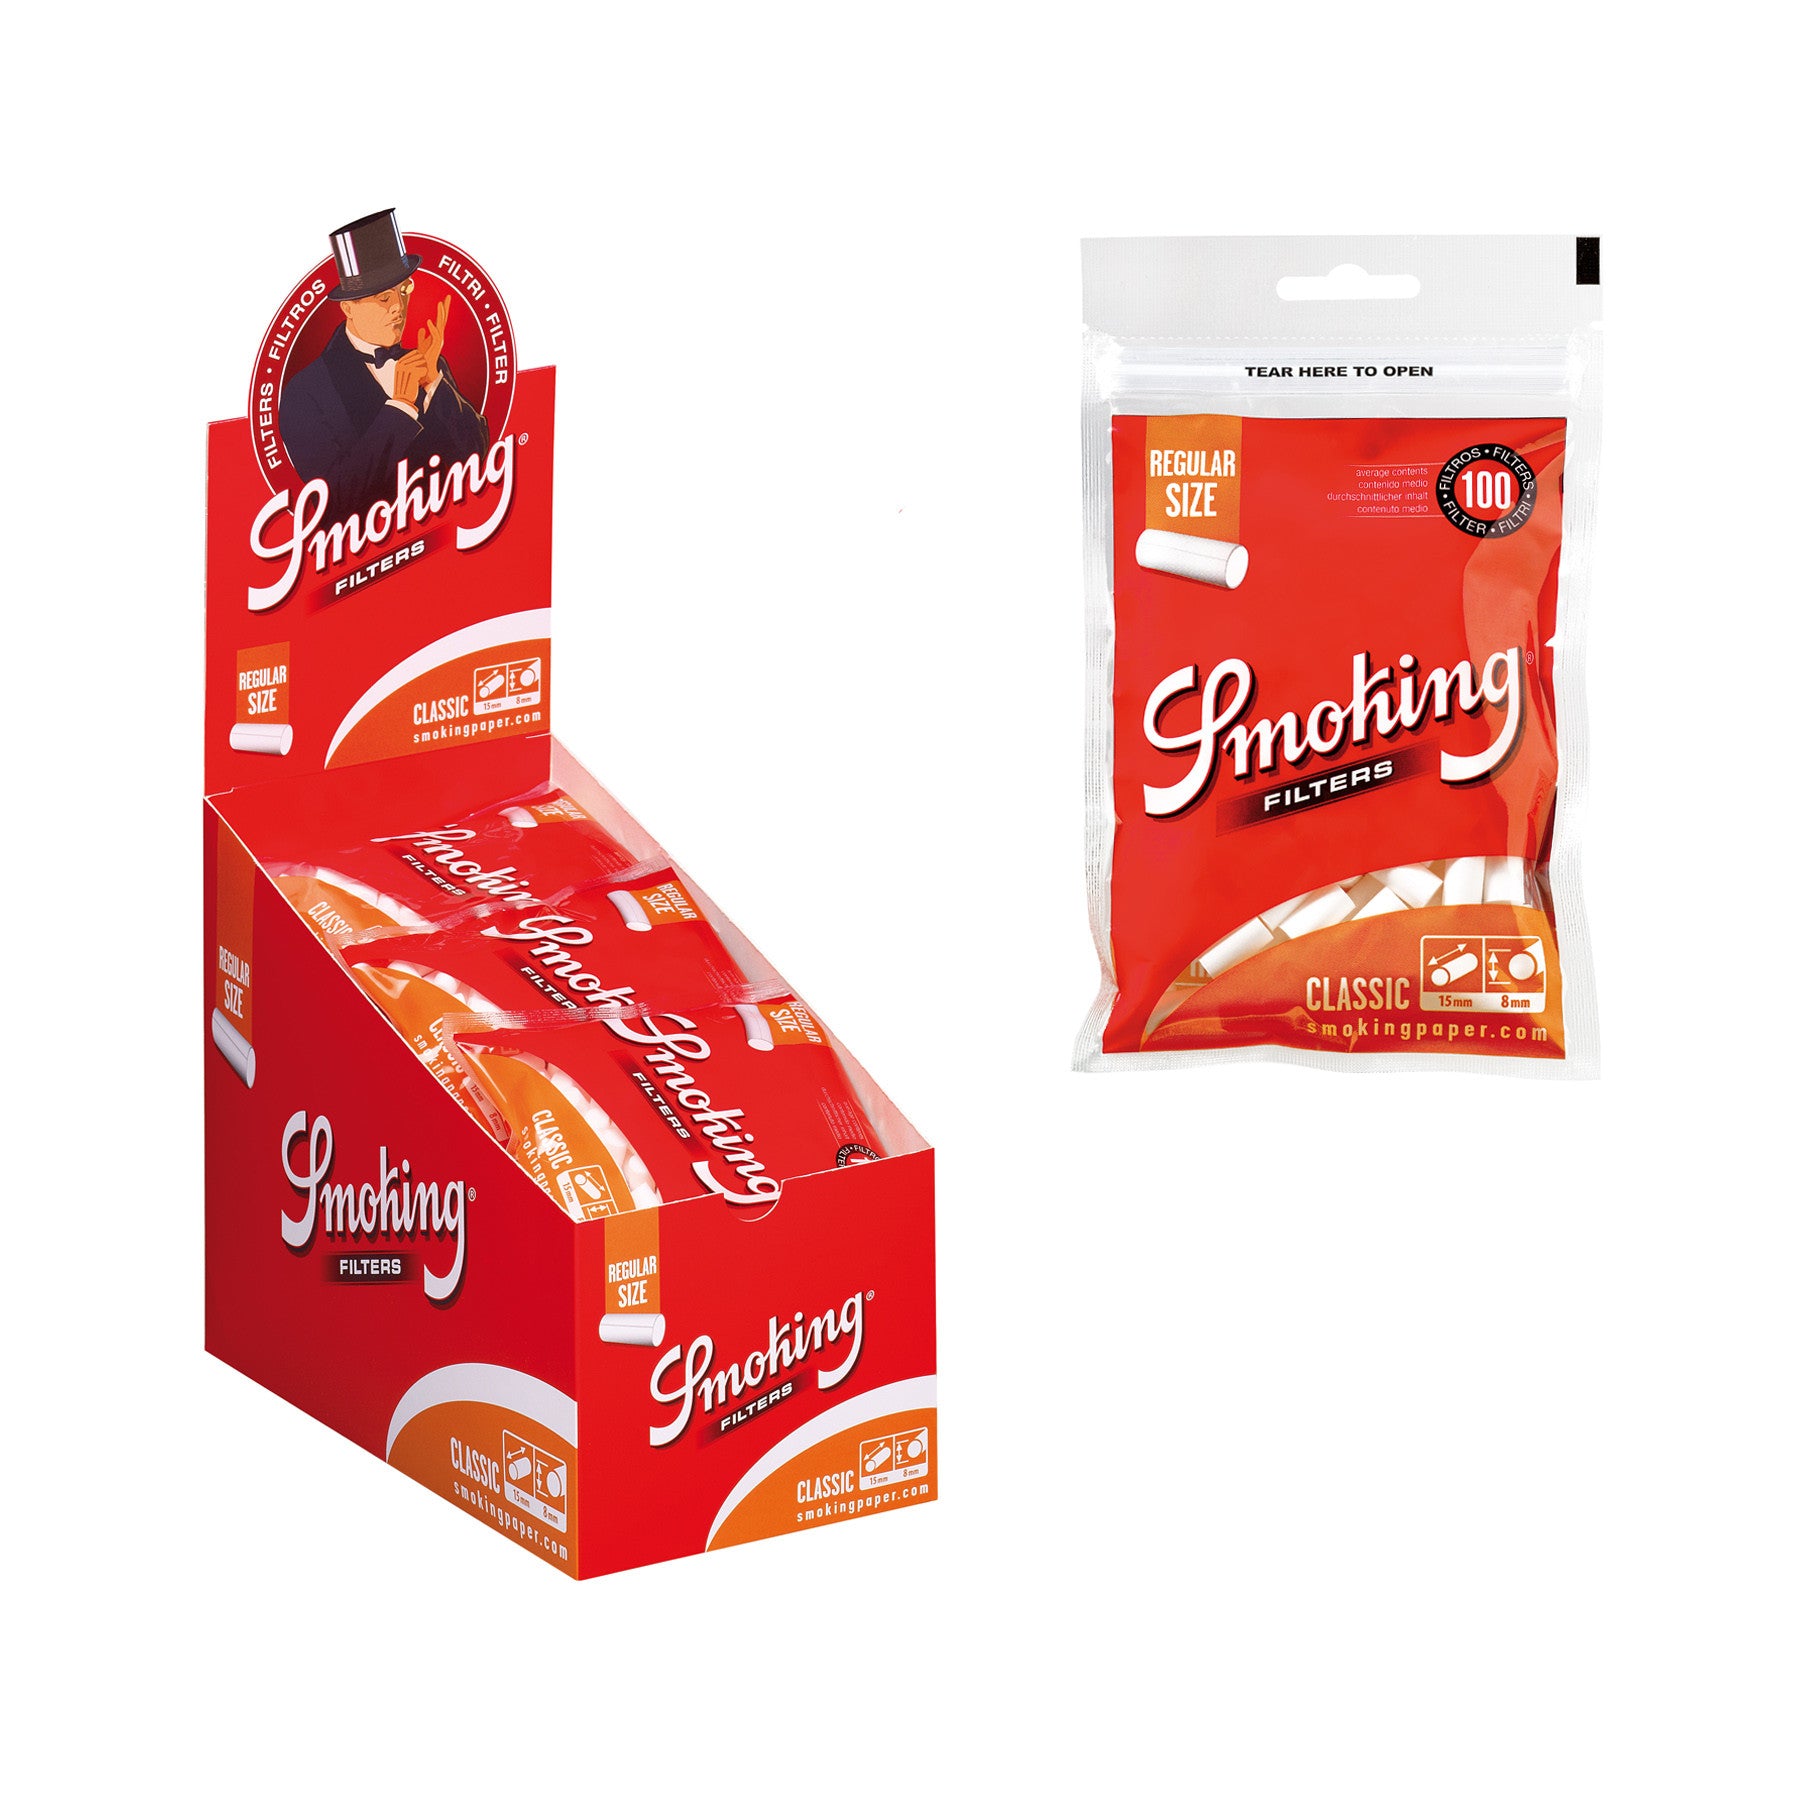 Smoking Classic Regular  Size Filters Box & Bag